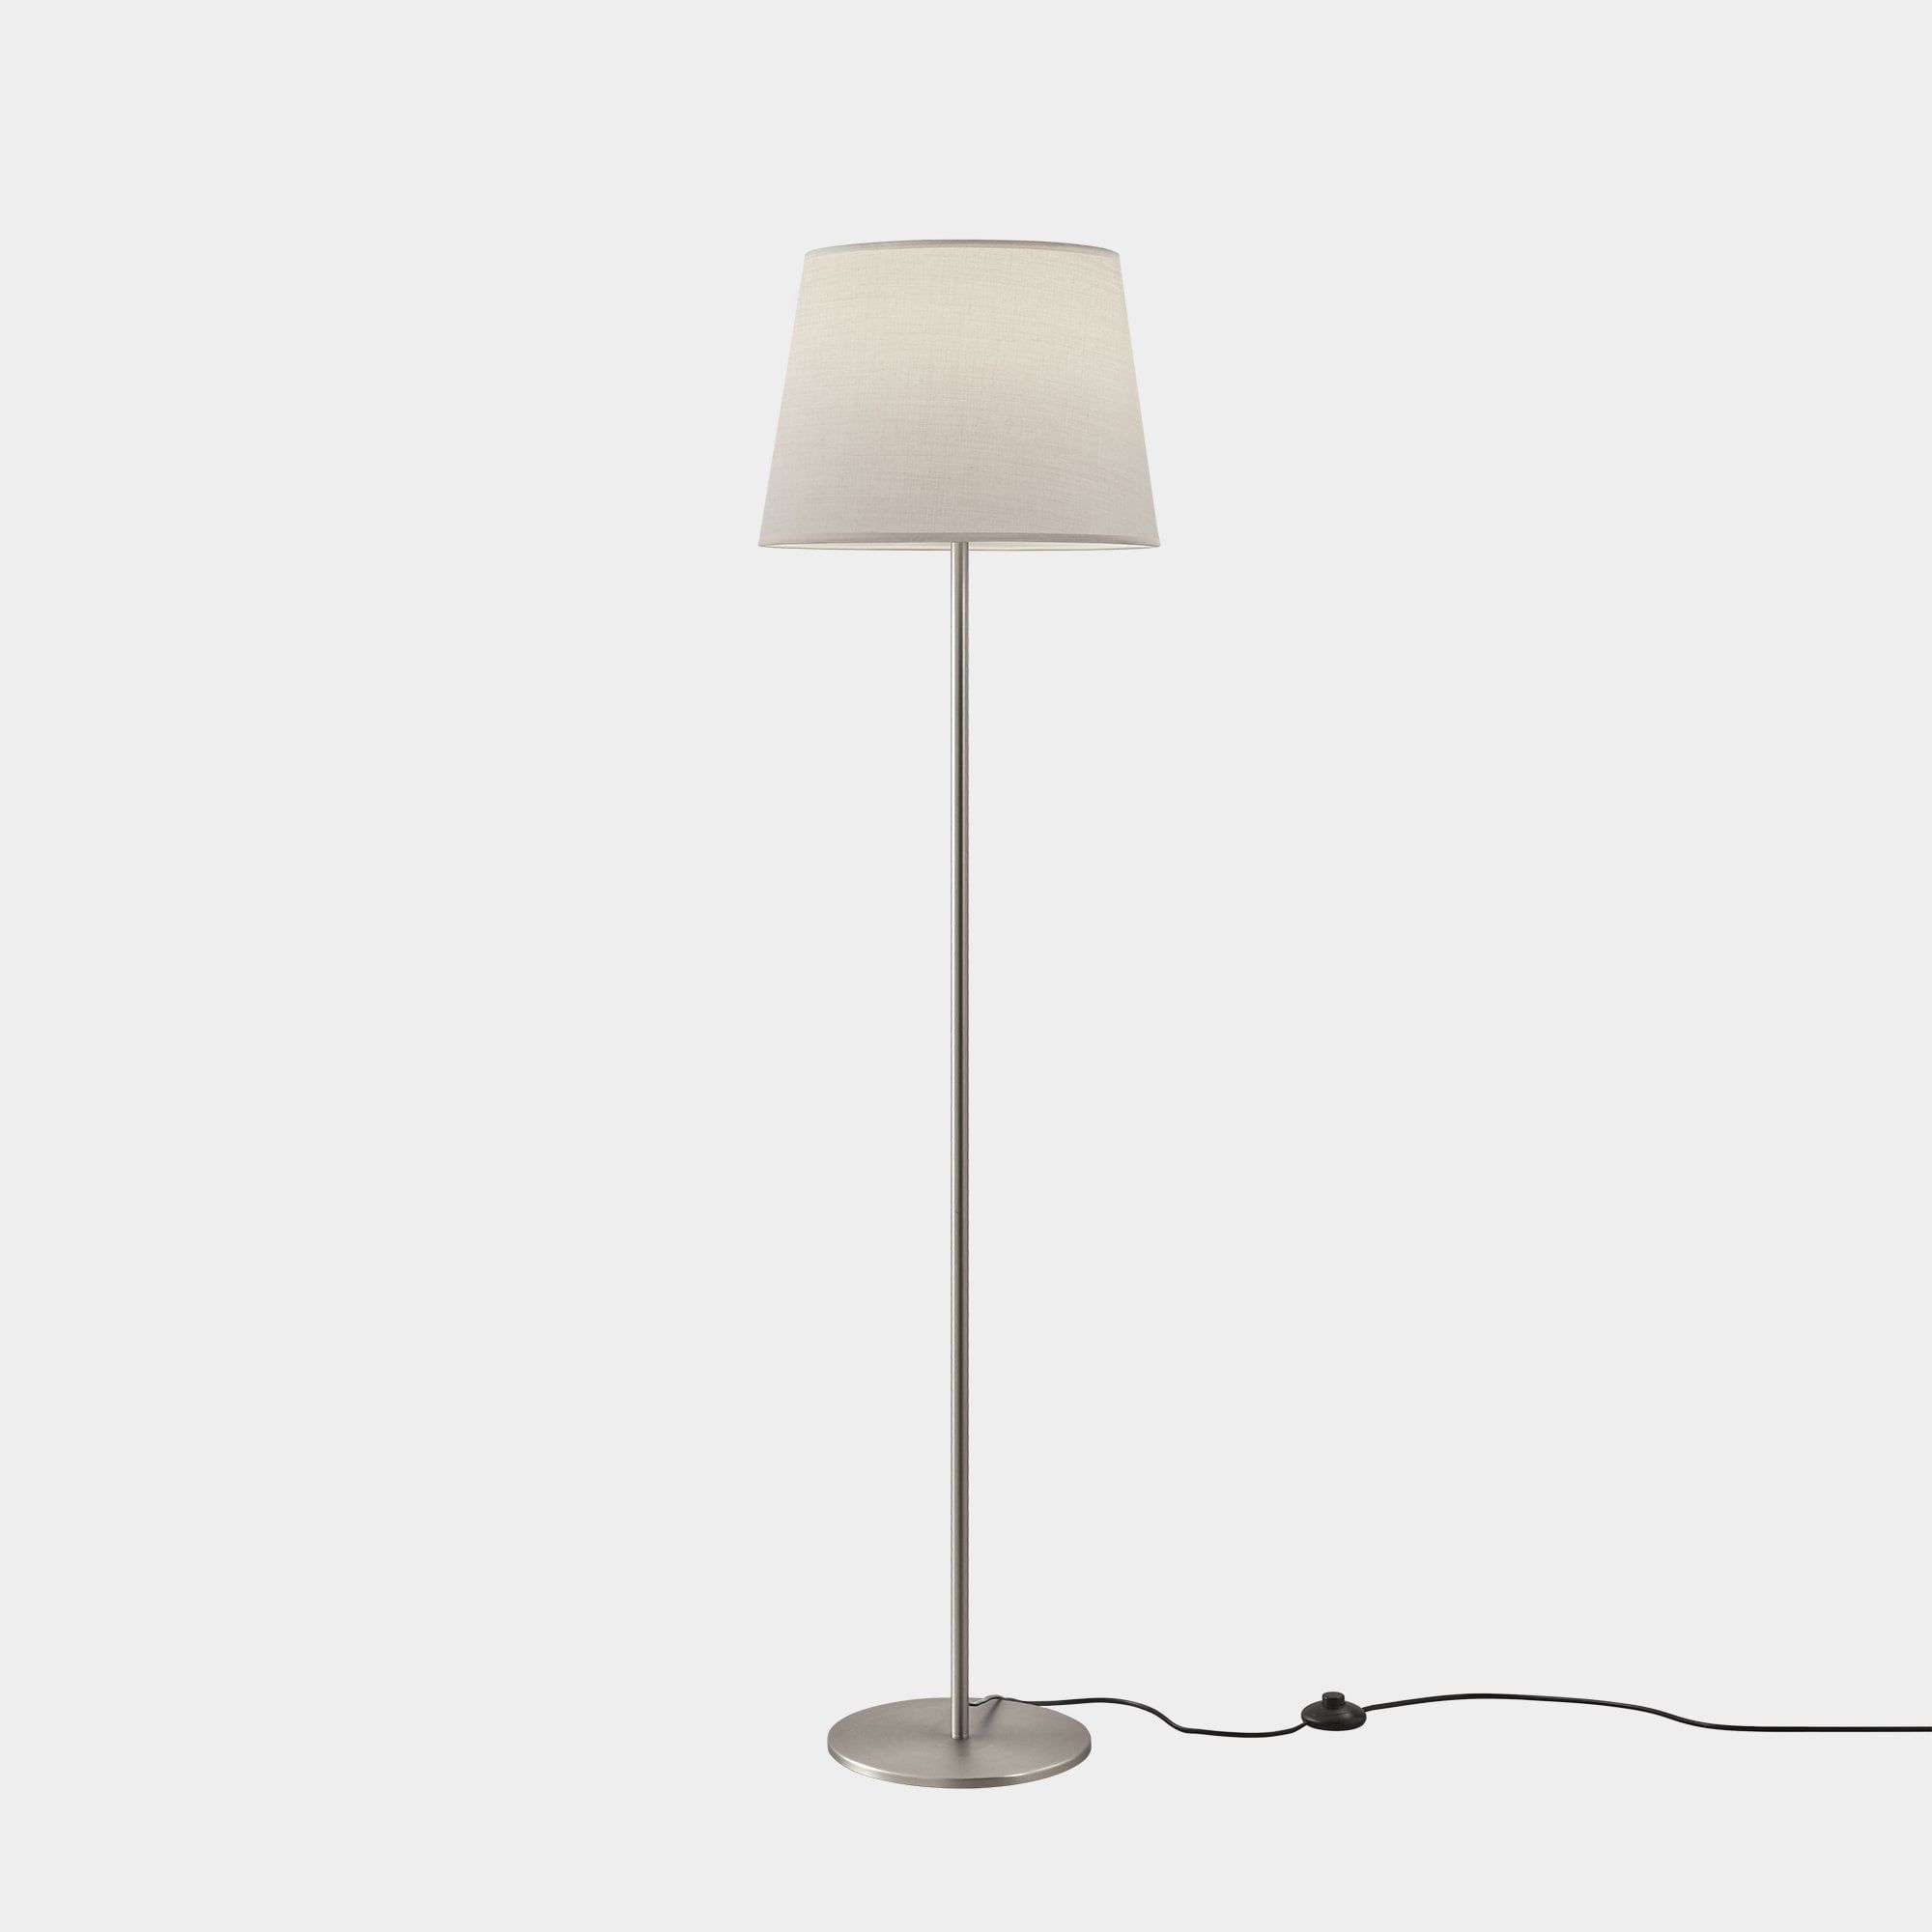 Modern Simply Styled Floor Lamp Satin Nickel | Lighting Company Uk Regarding Brushed Nickel Floor Lamps (View 9 of 20)